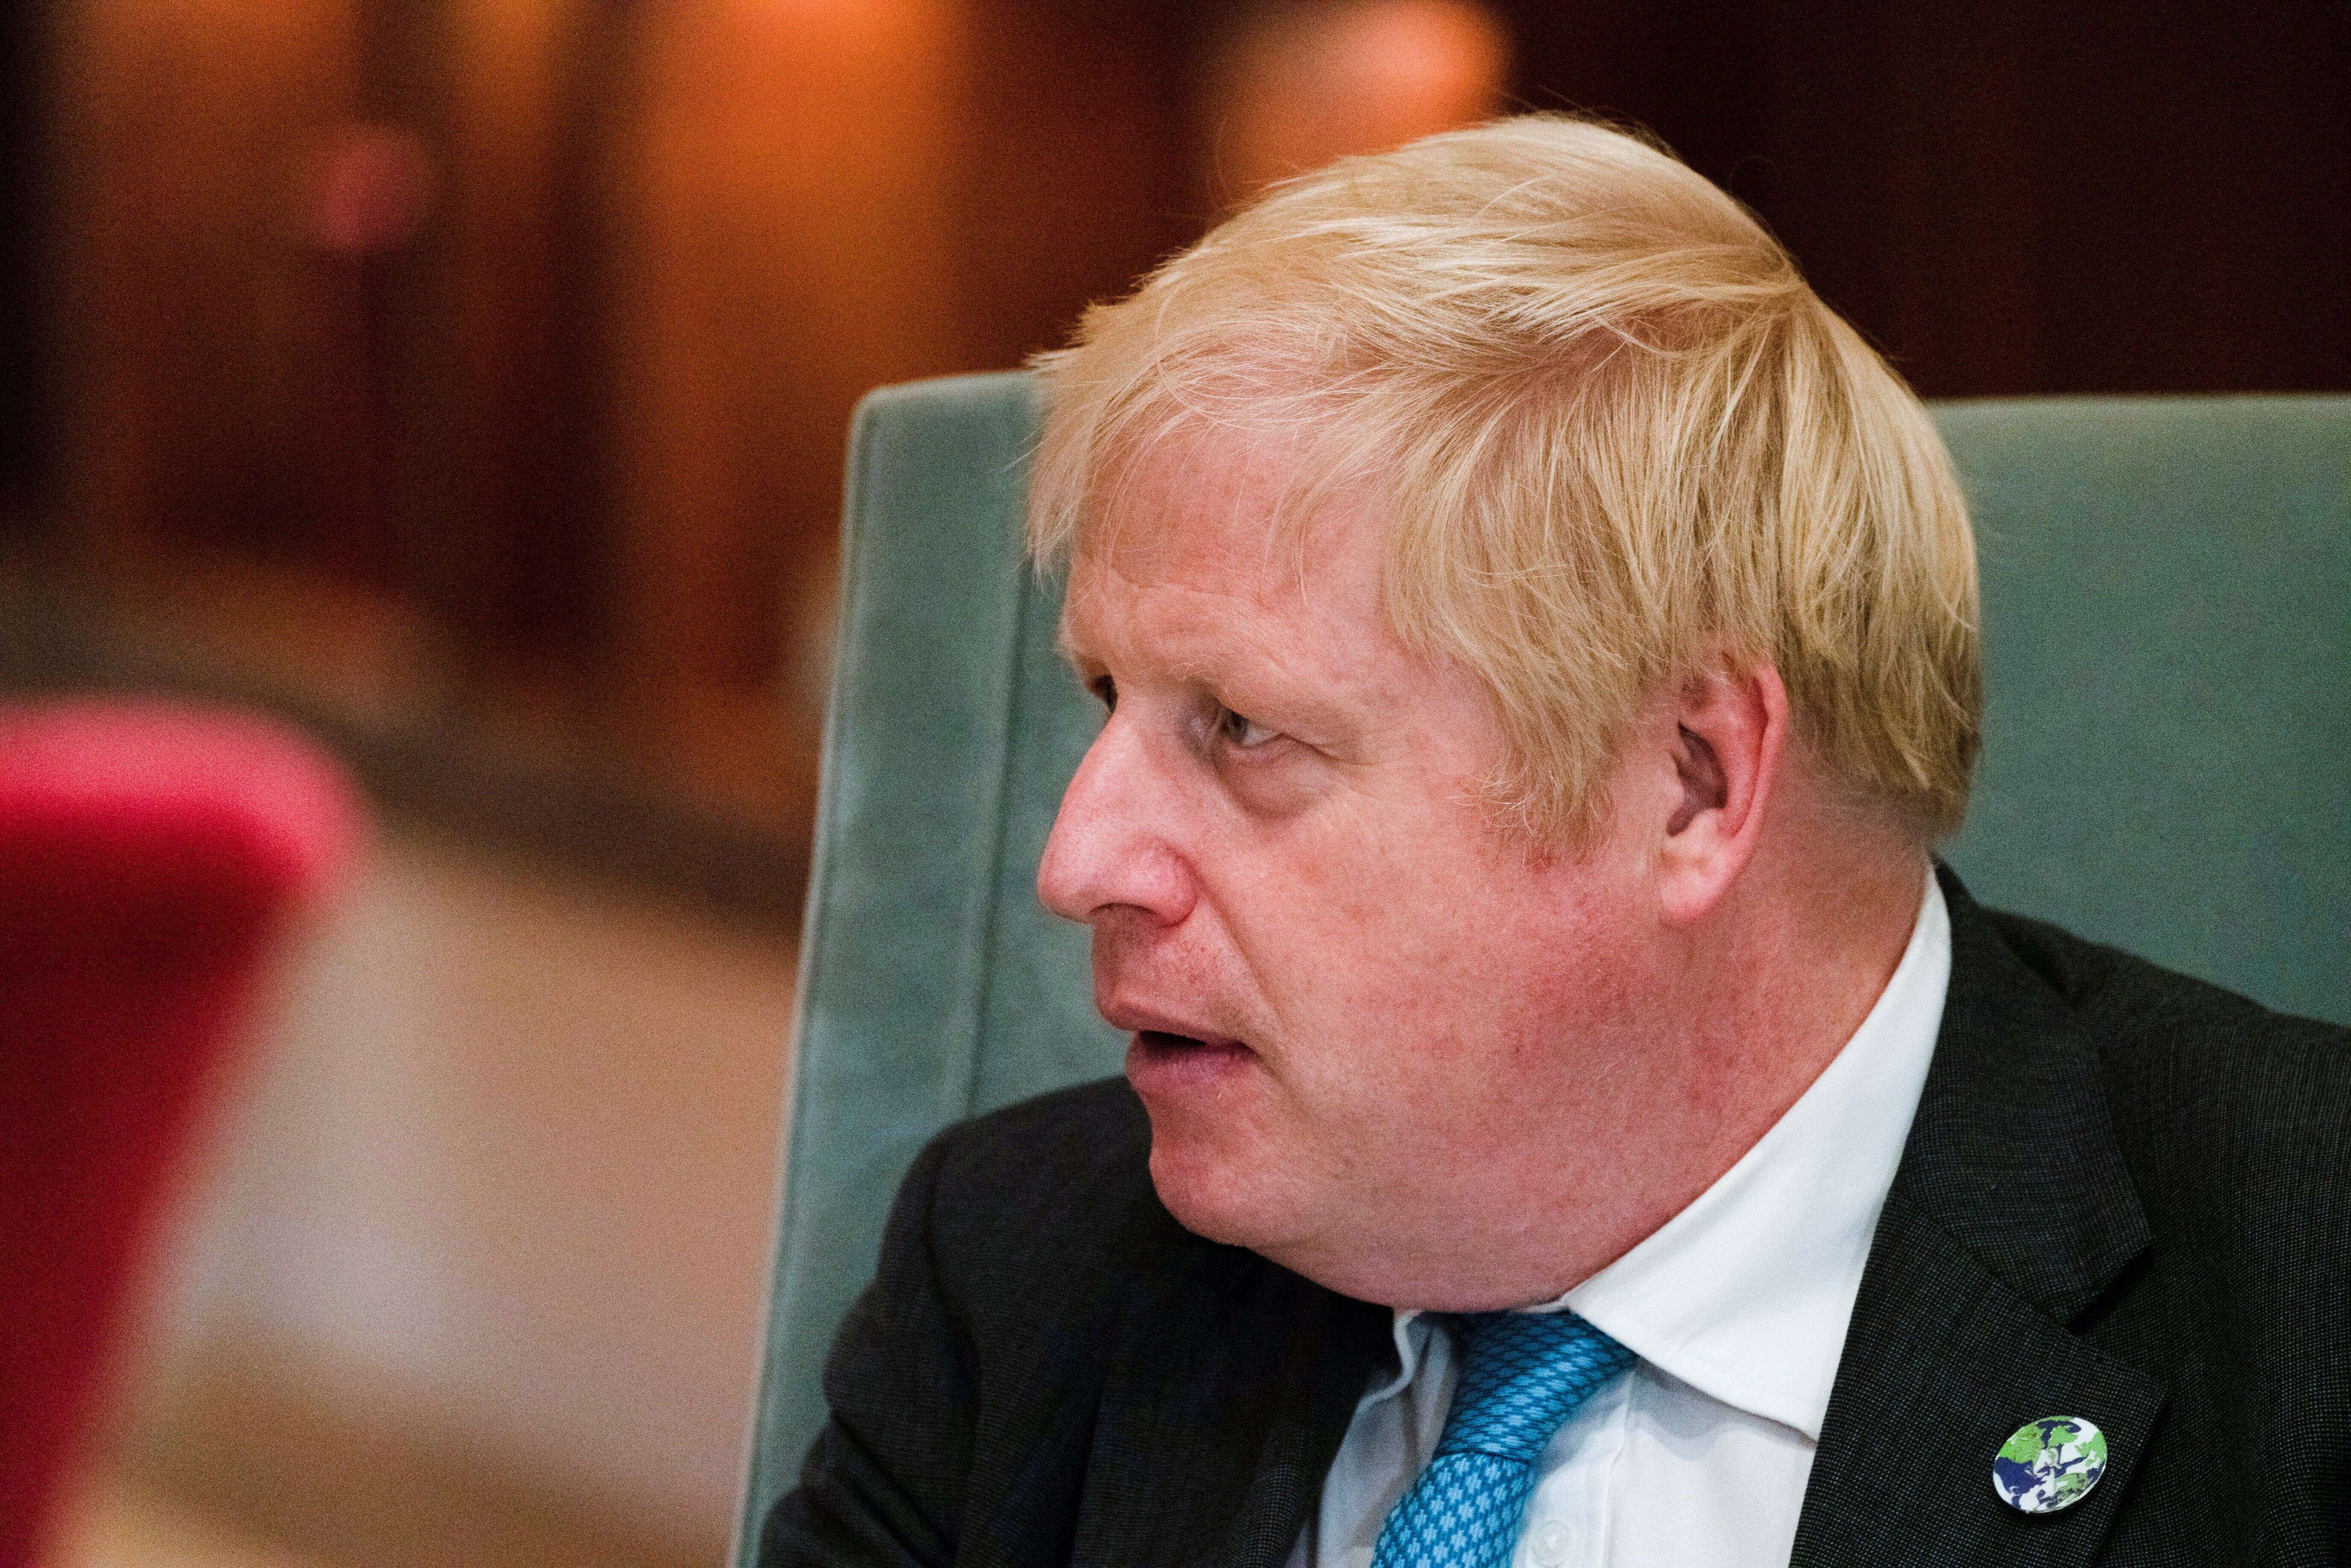 Boris Johnson (ici lors d'une réunion à l'ONU le 22 septembre) pourrait revoir sa politique en matière de visas, face aux pénuries qui frappent le Royaume-Uni. REUTERS/David 'Dee' Delgado